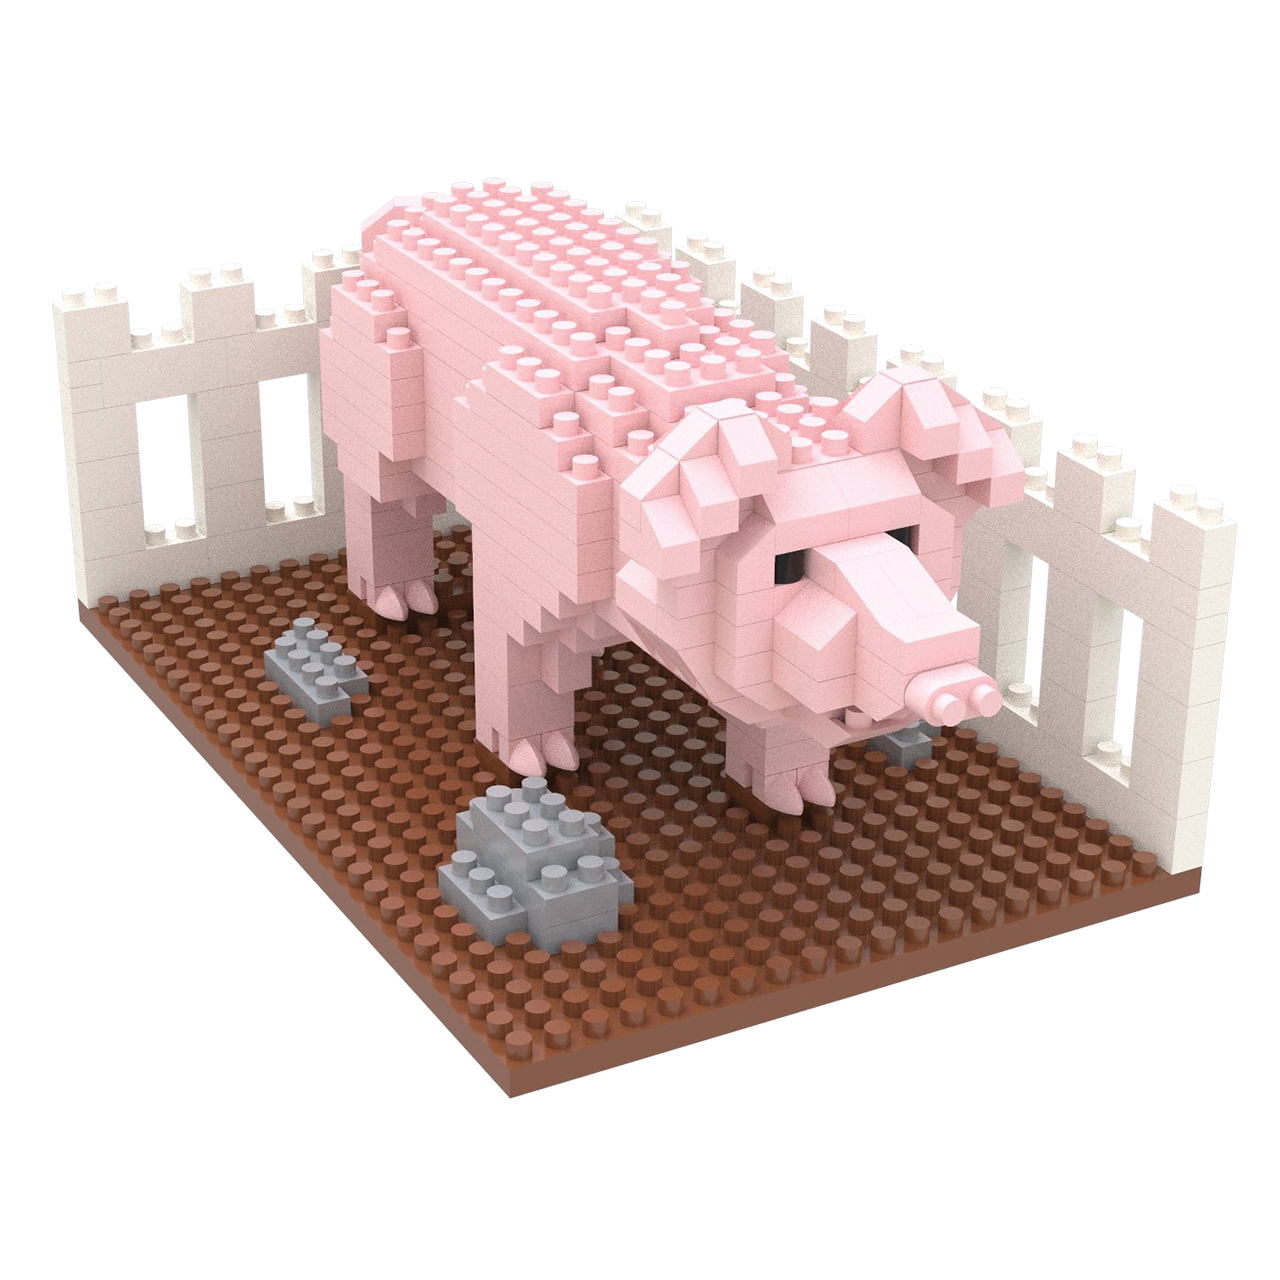 Pig in Pig Sty